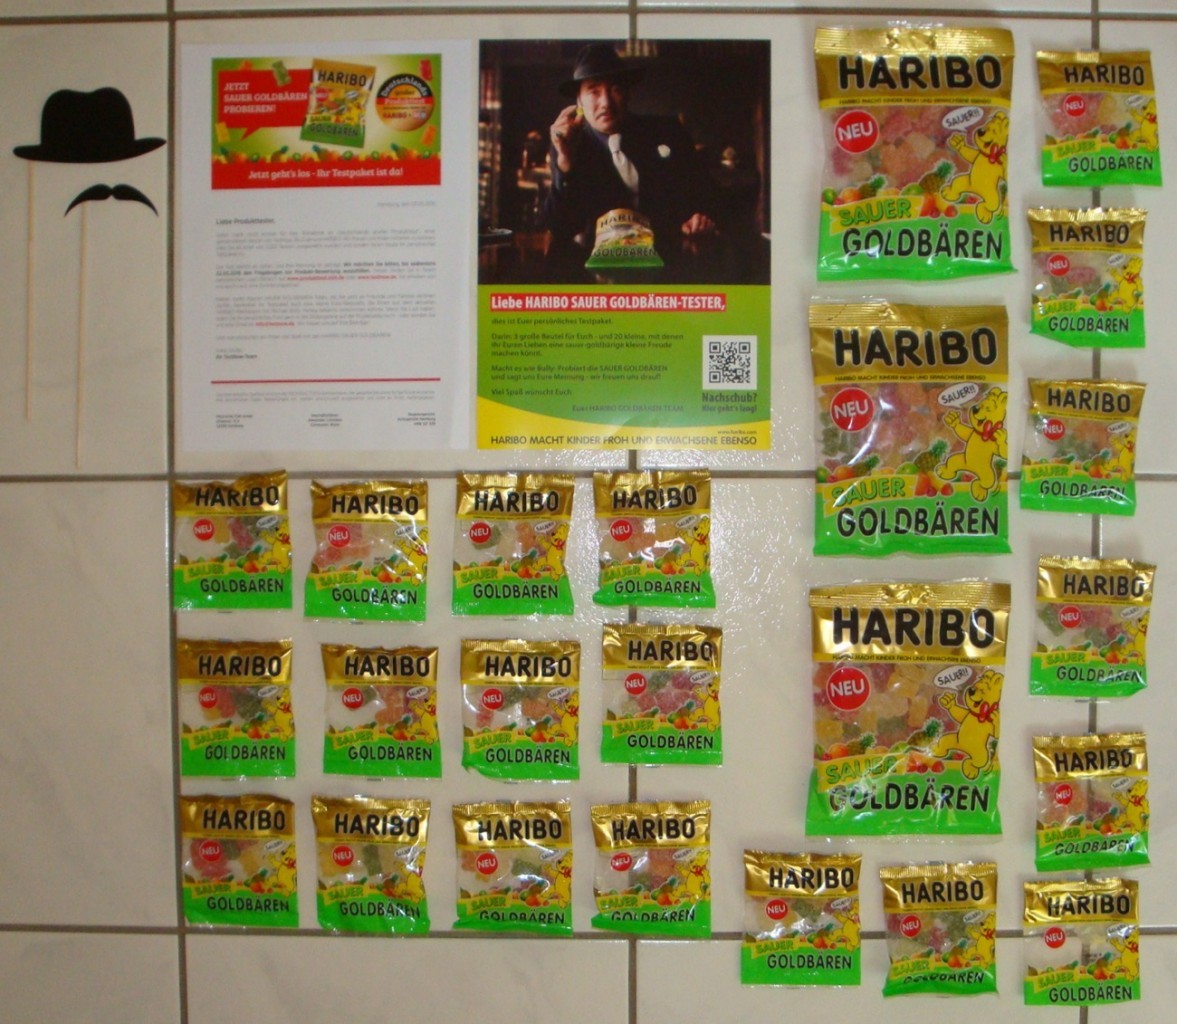 Haribo Sauer Anschreiben, Bully Plakat, 3 Haribo Goldbären Sauer Packungen, 20 Haribo Goldbären Sauer Mini Packungen, Schnurrbart und Hut